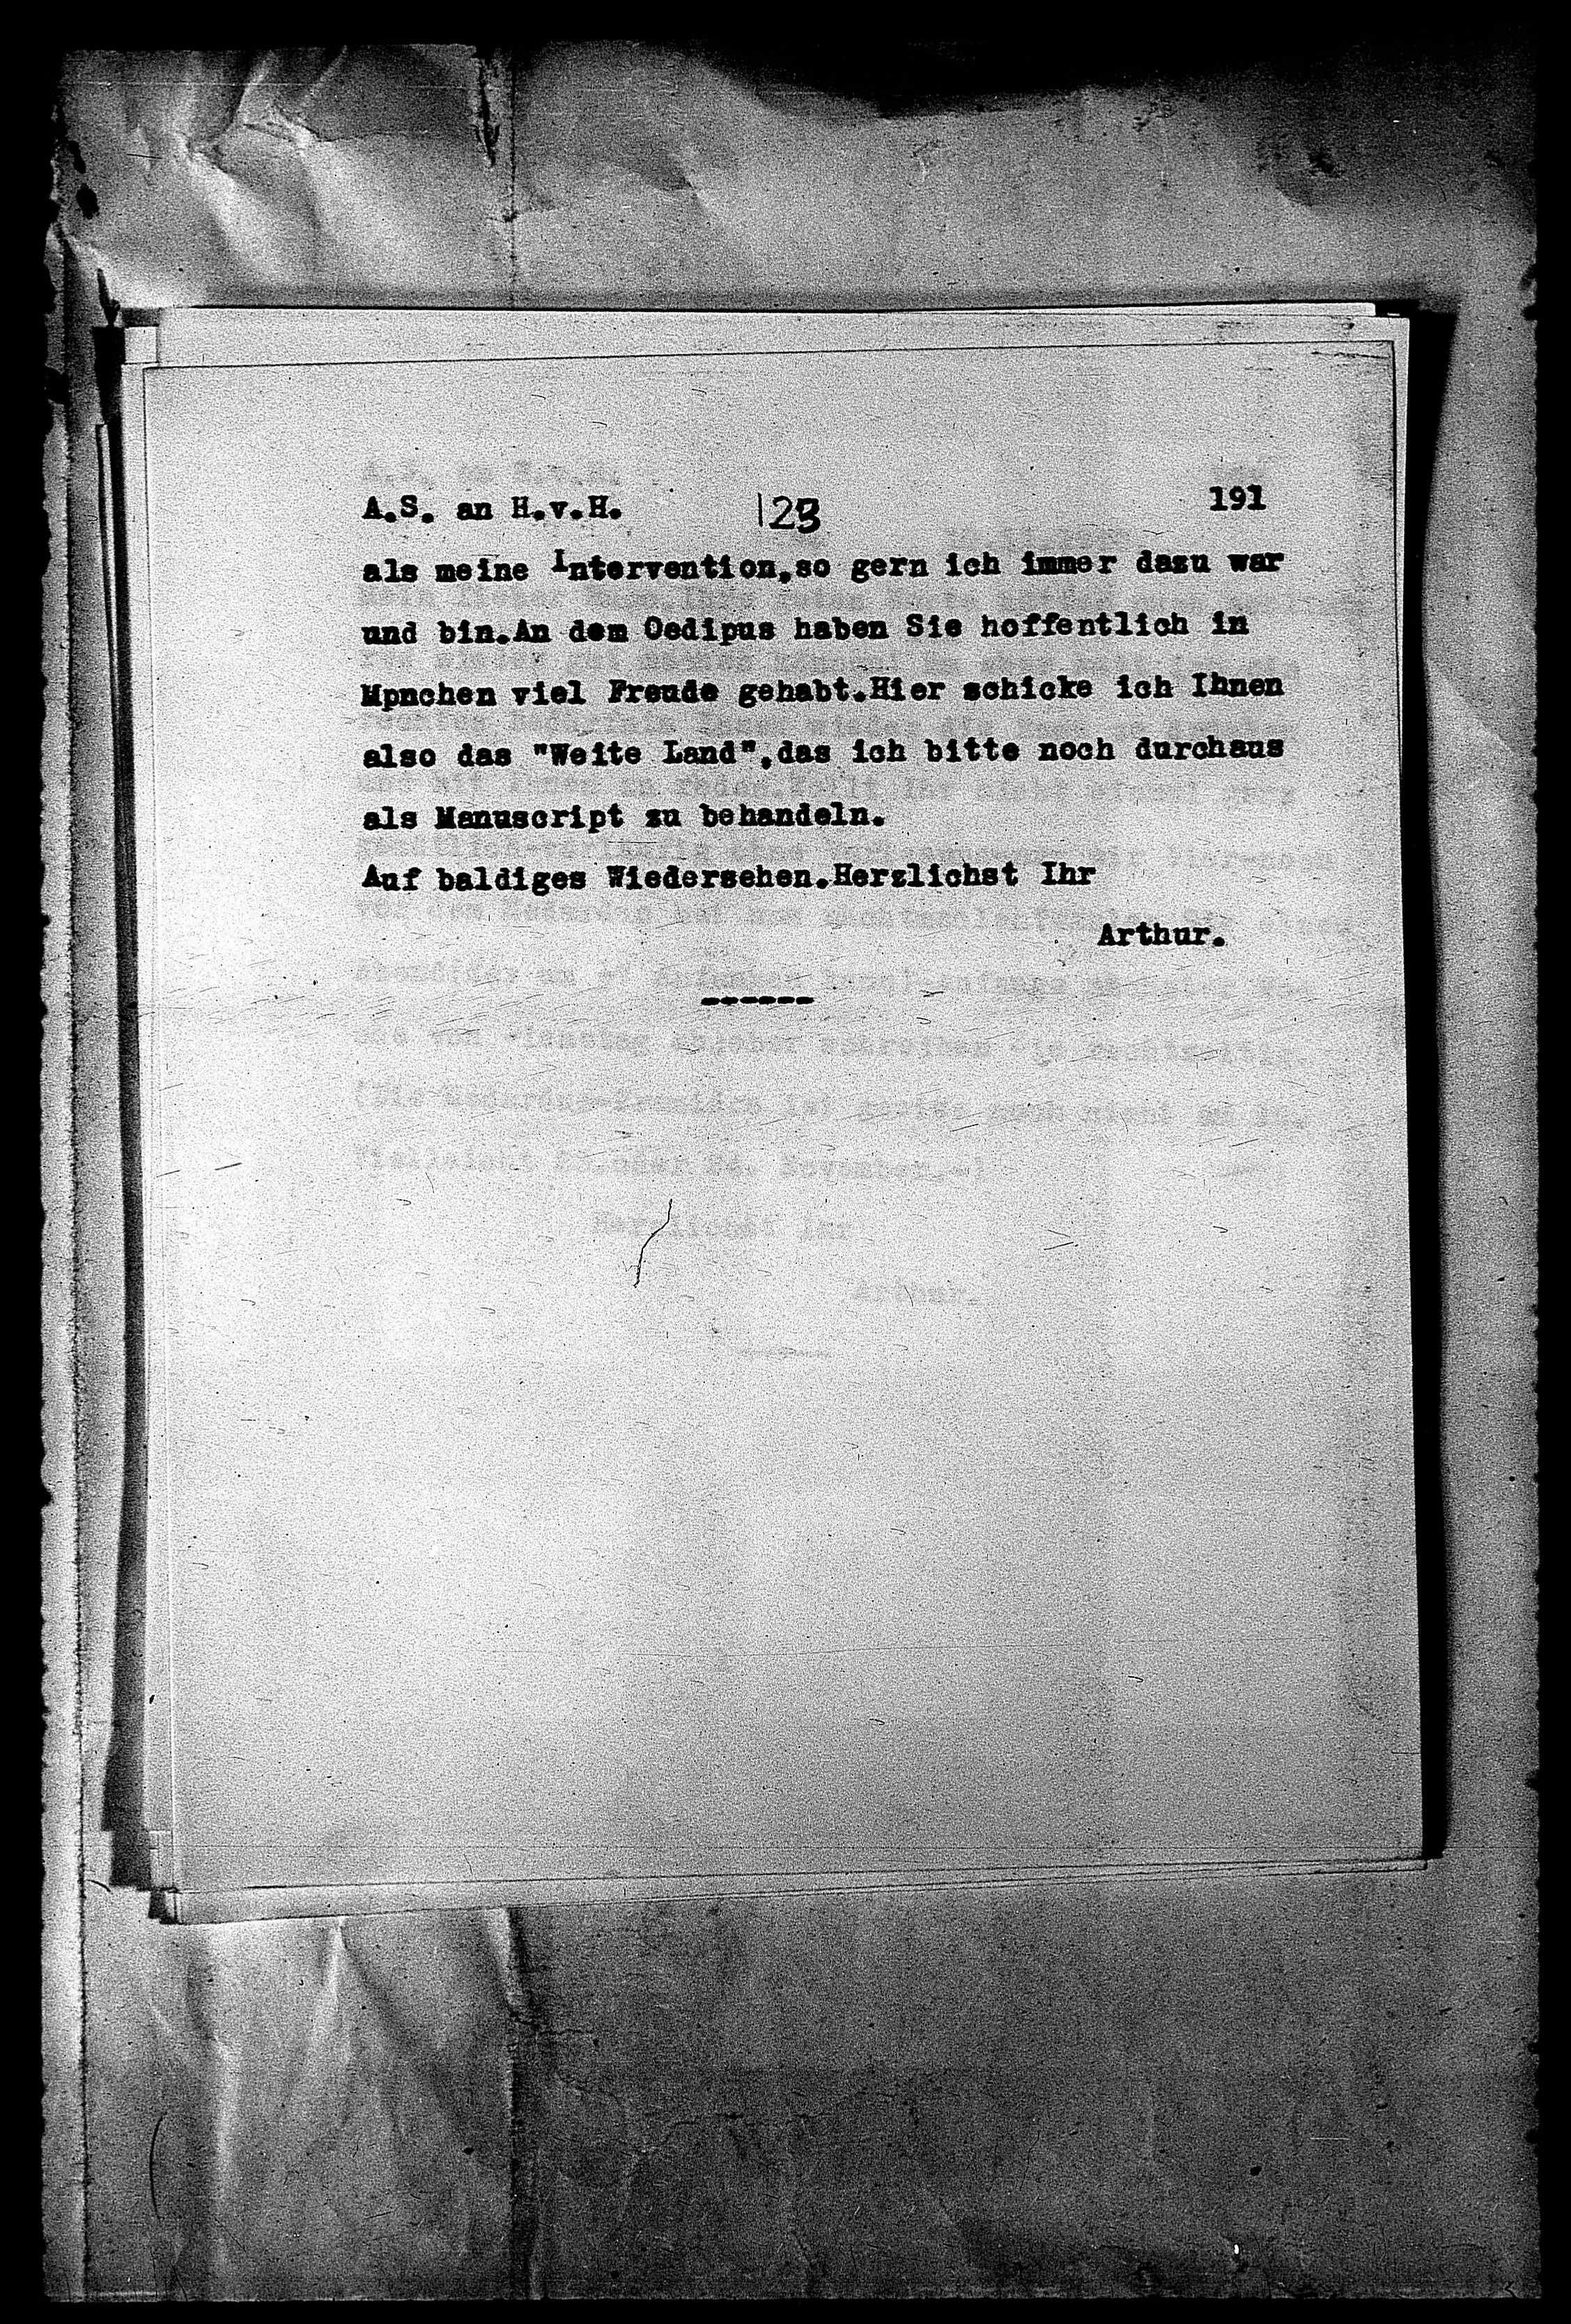 Vorschaubild für Hofmannsthal, Hugo von_AS an HvH Abschrift, HvH an AS, Originale (Mikrofilm 38), Seite 197